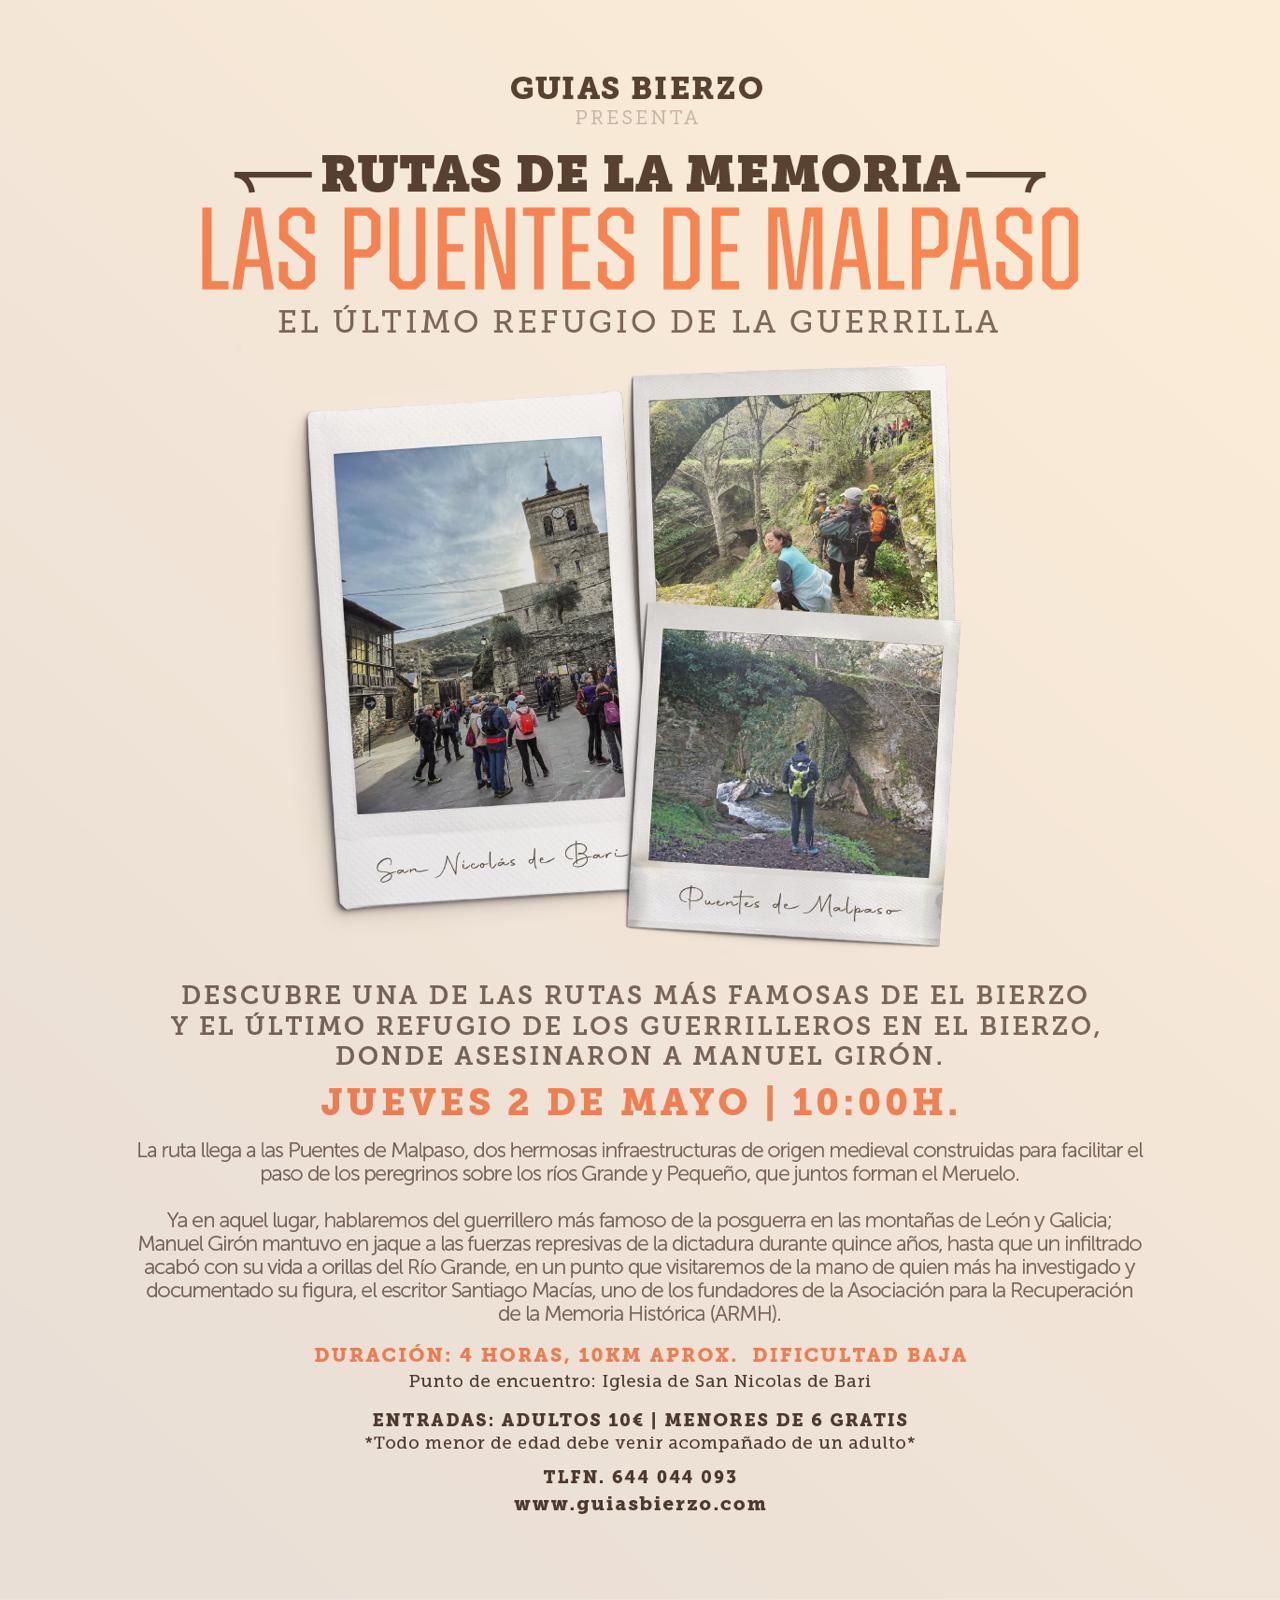 Guías Bierzo organiza una ruta a Las Puentes de Malpaso 'El último refugio de la memoria' 4